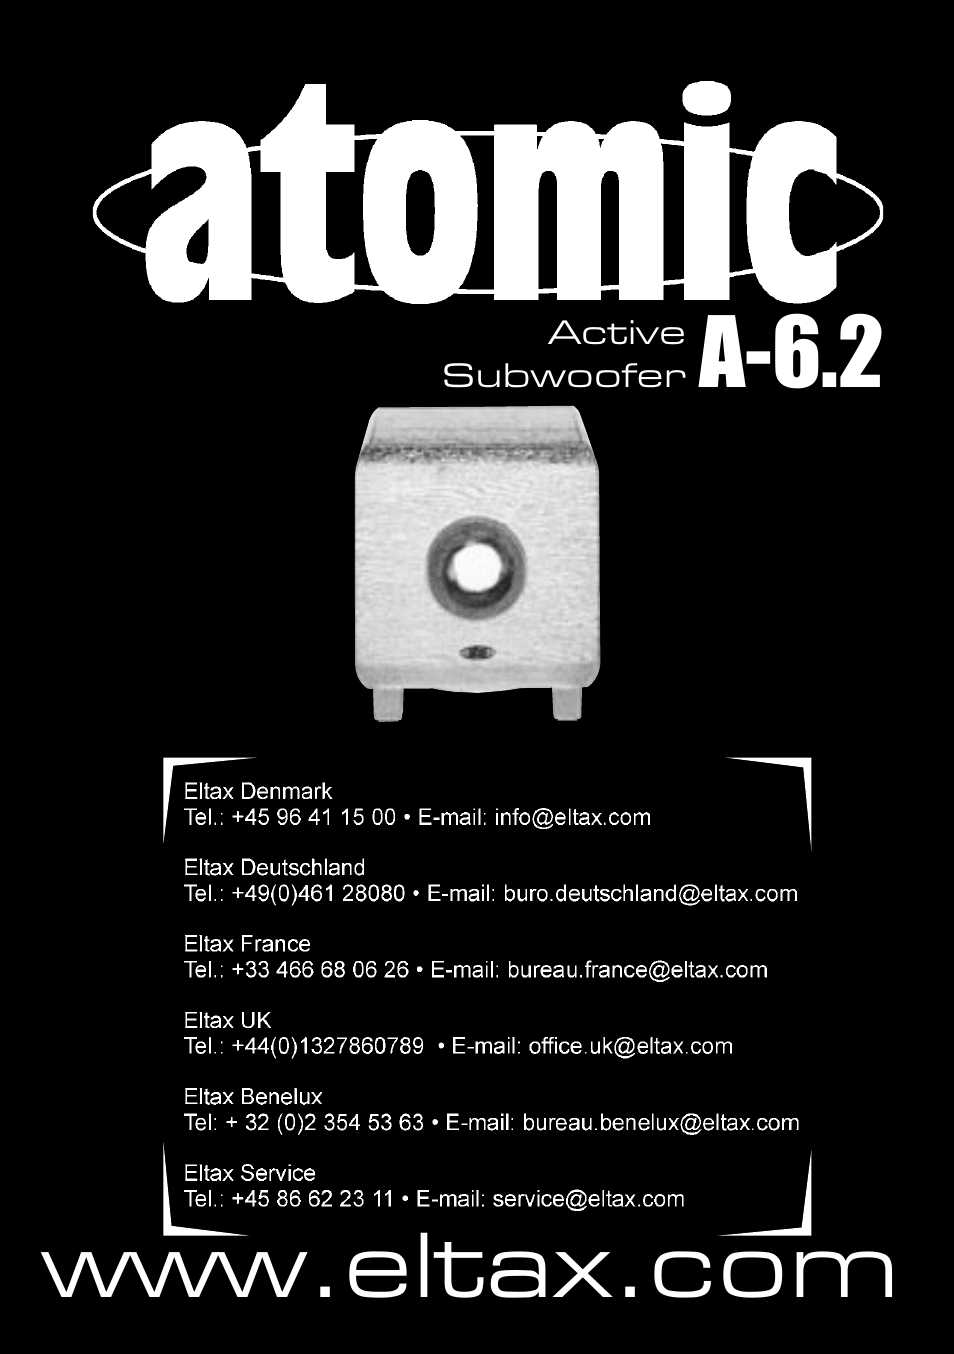 dusin Tilslutte involveret A-6.2, Active subwoofer | Eltax Atomic A-6.2 User Manual | Page 12 / 12